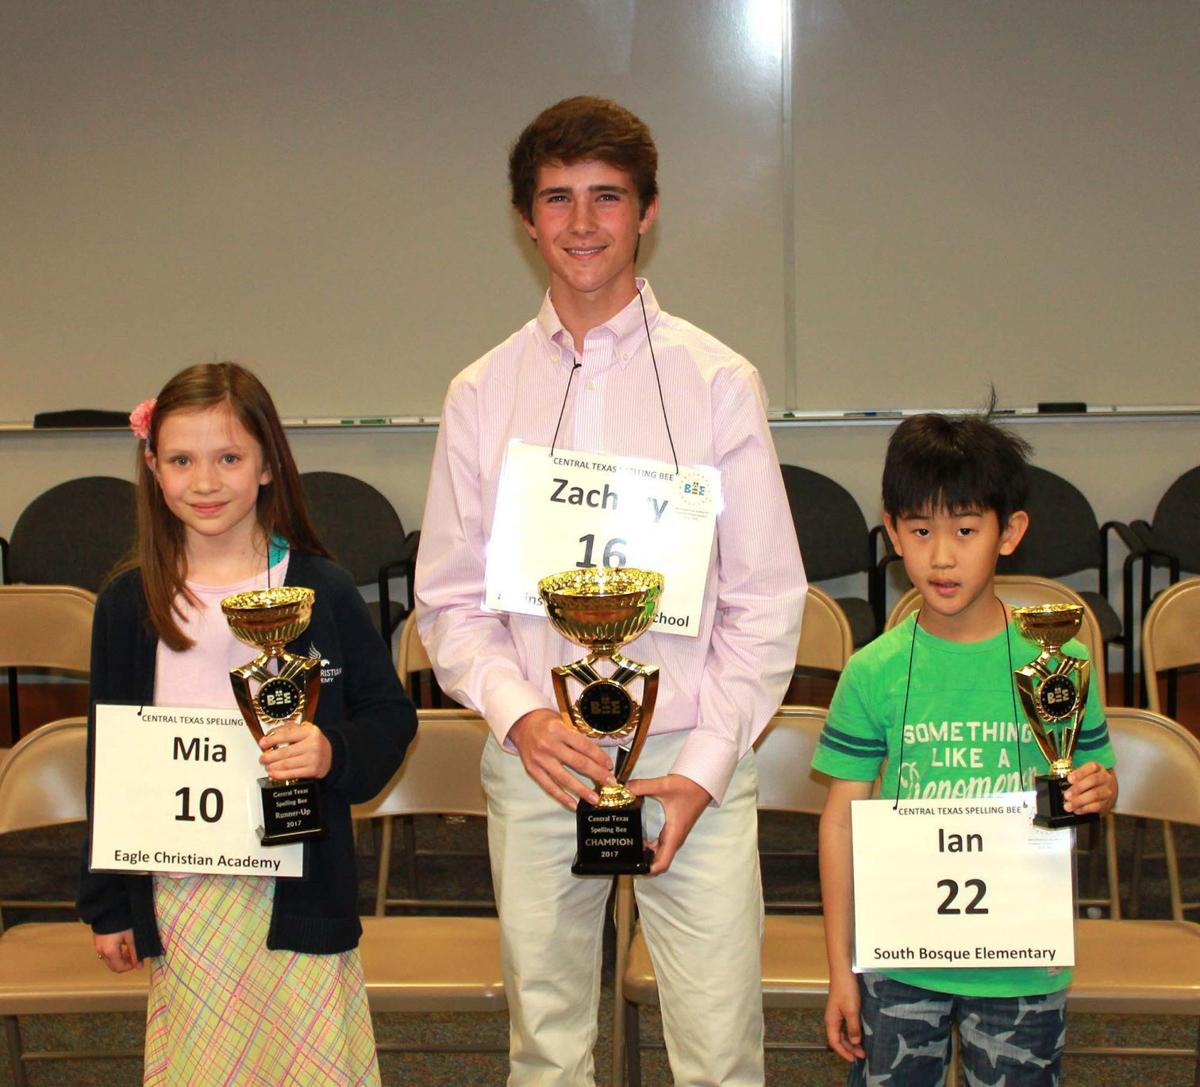 Central Texas Spelling Bee winner crowned